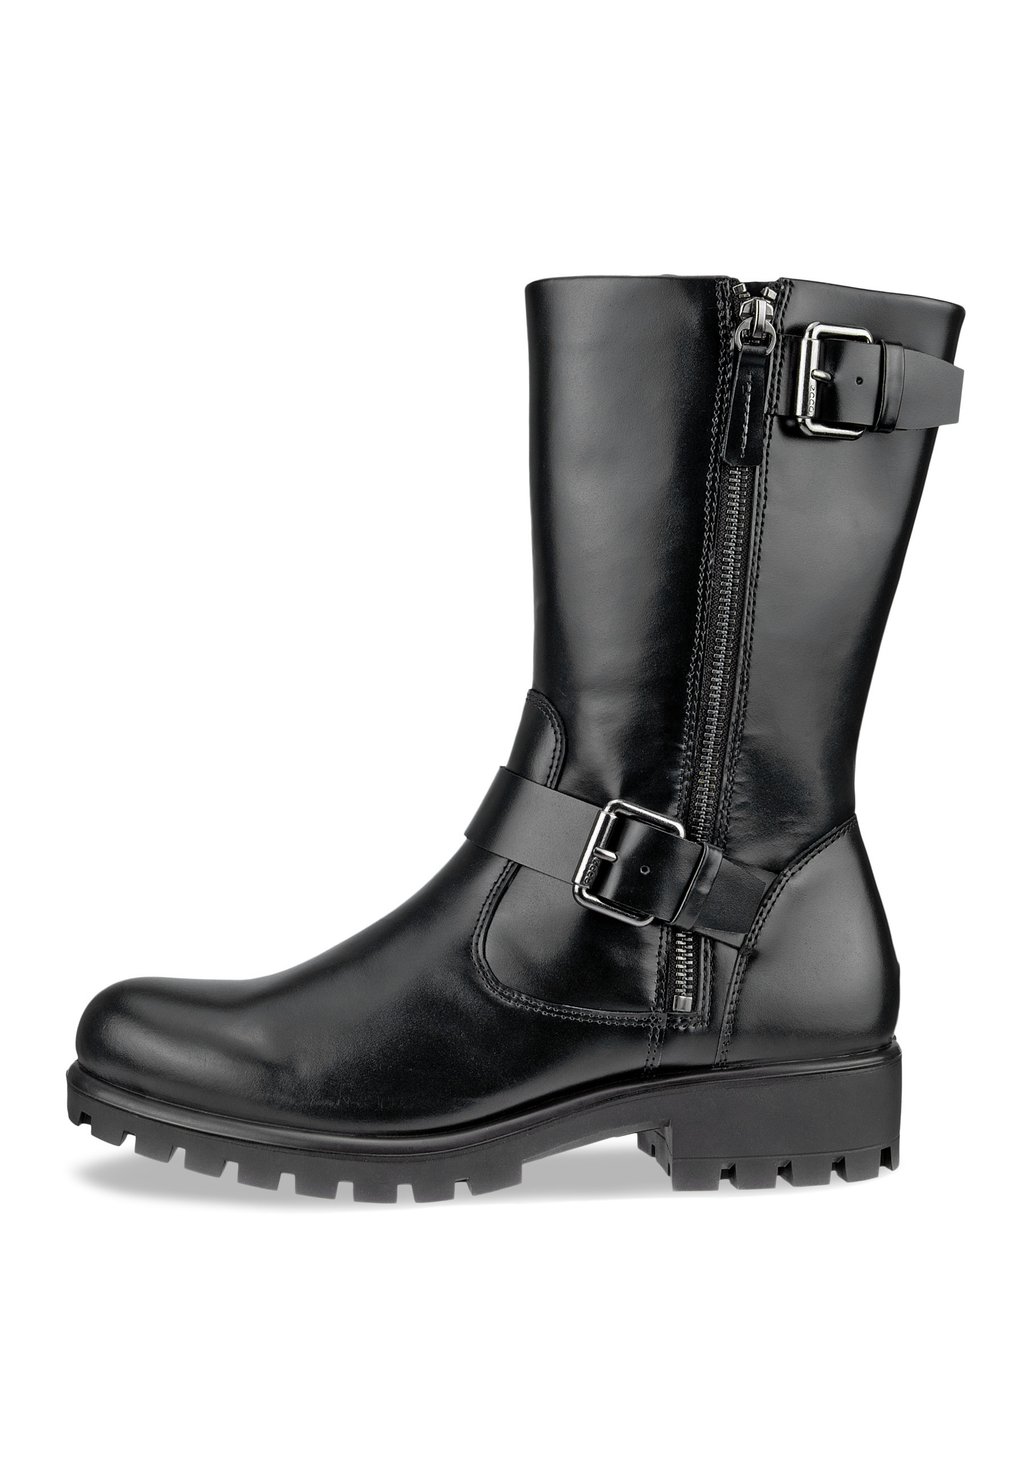 Техасские/байкерские ботинки Modtray W ECCO, черный ботинки высокие ecco modtray w черный 37 размер